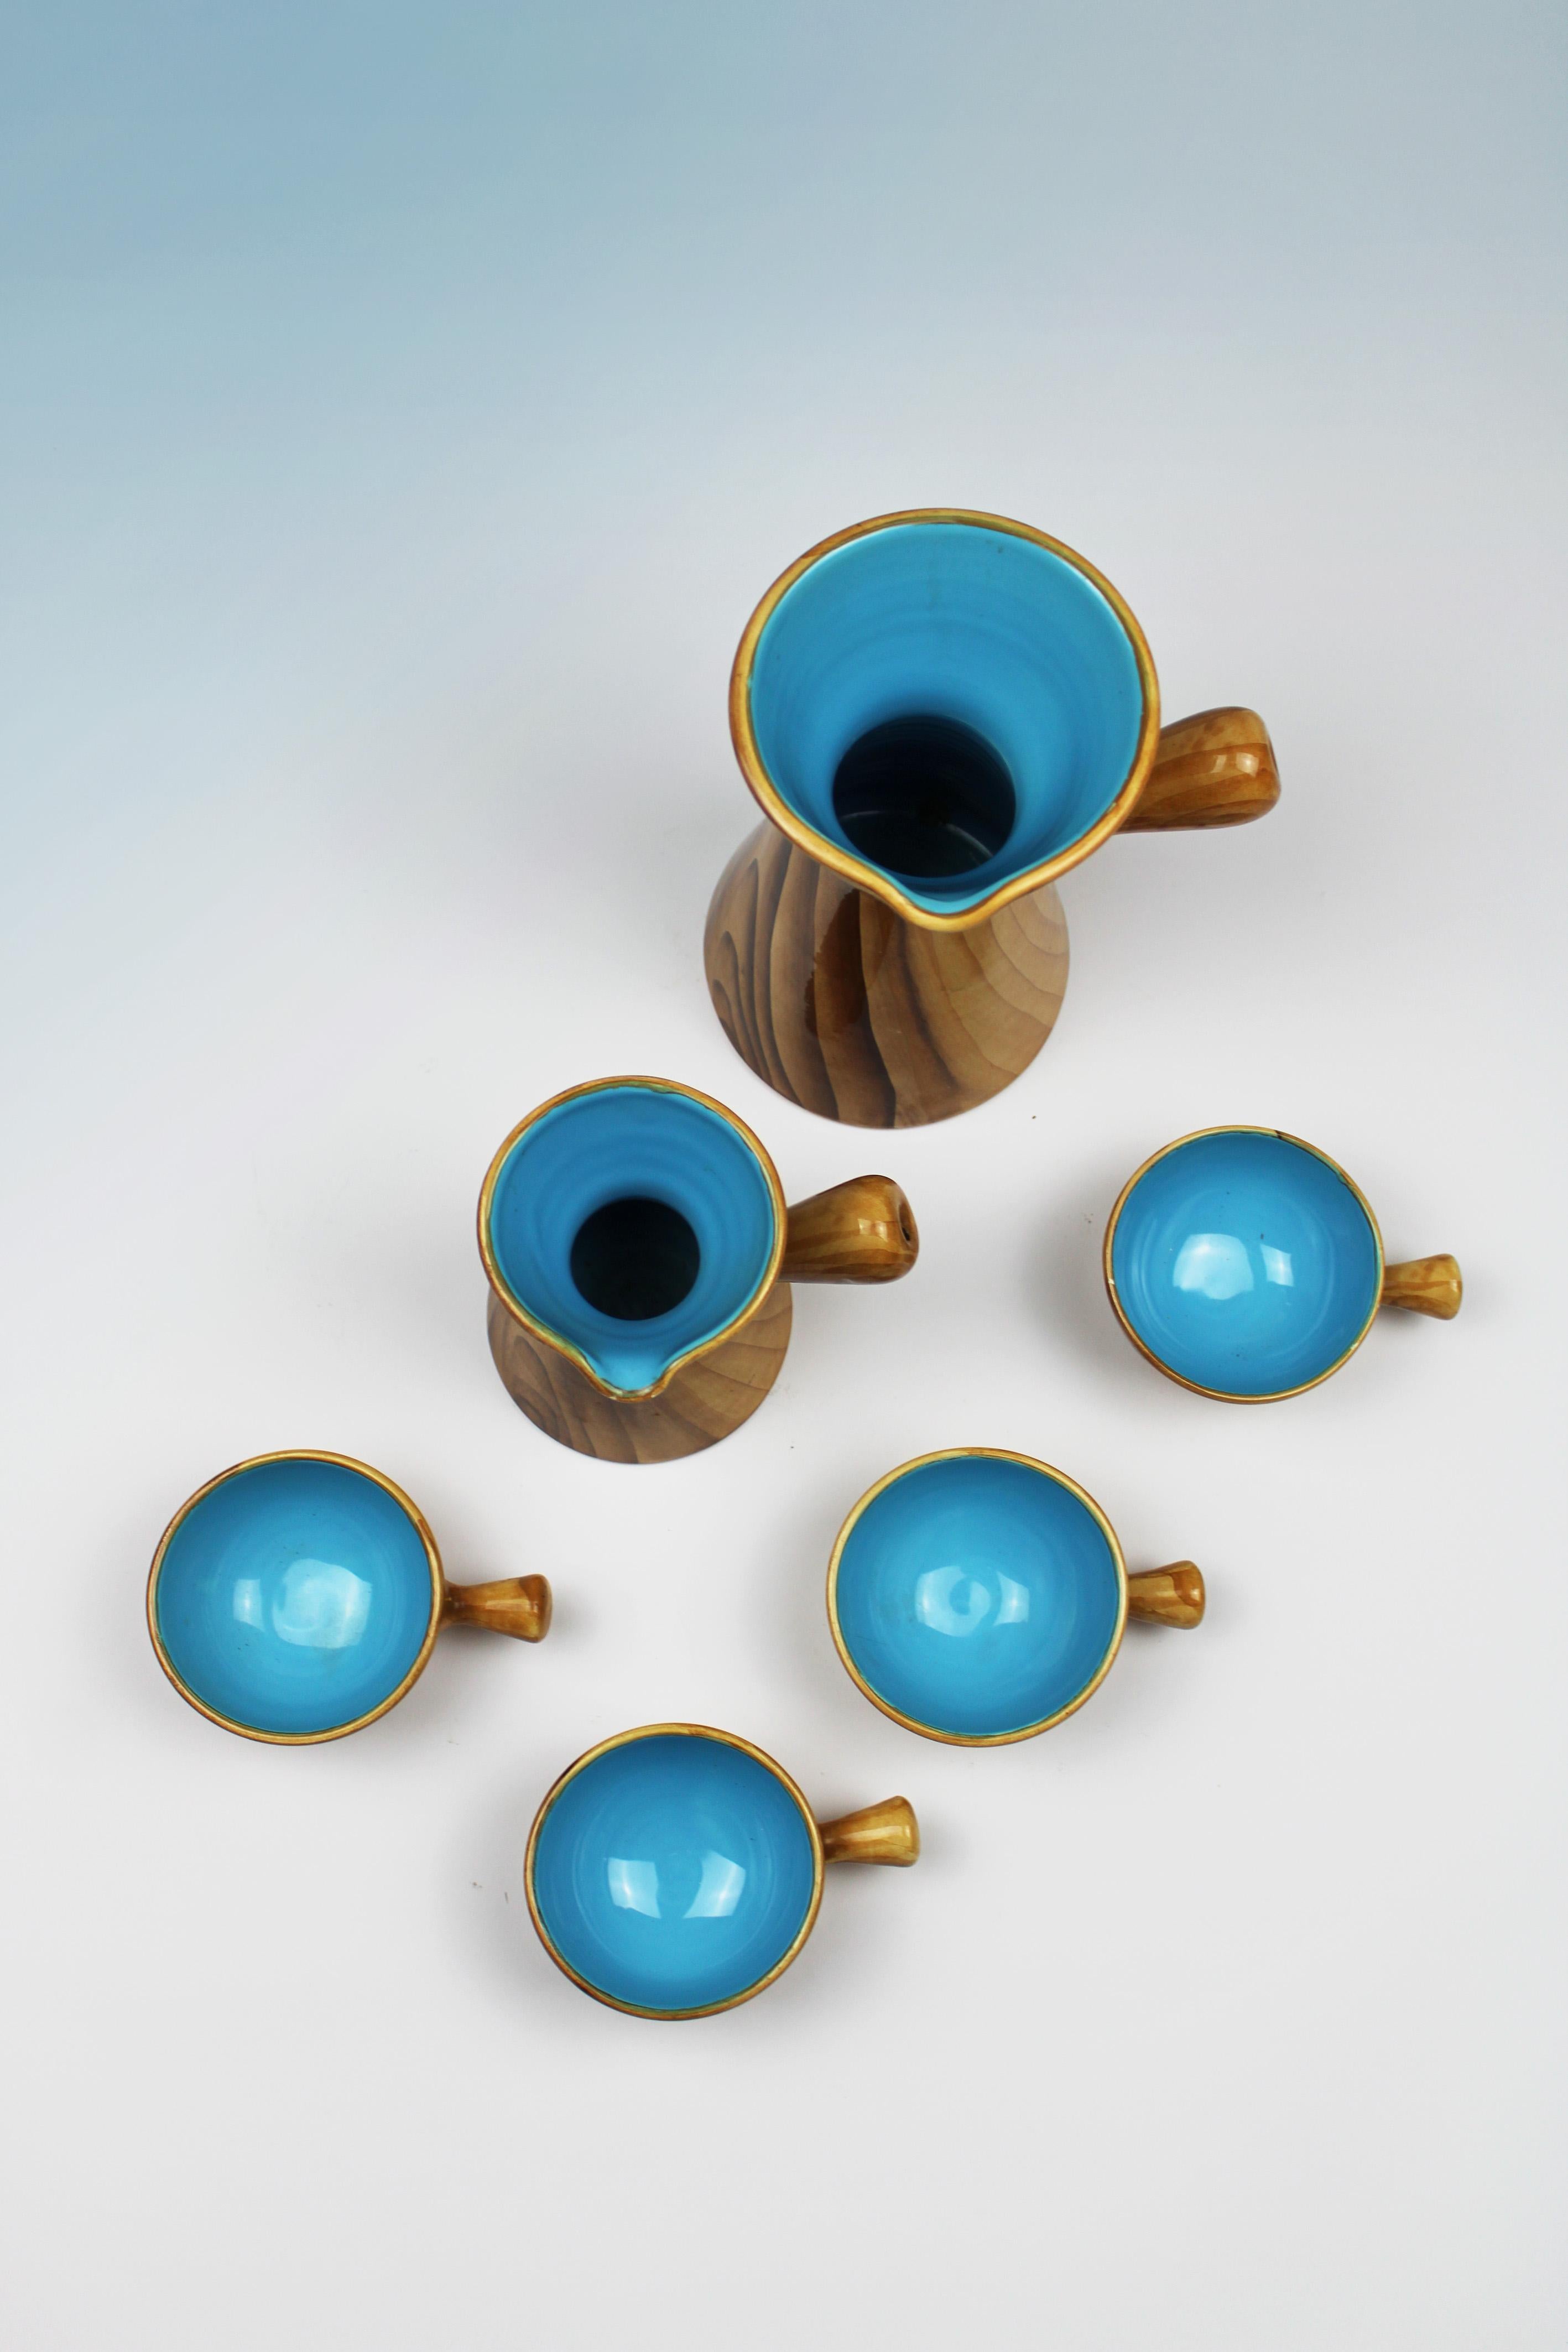 Voici l'élégance intemporelle de la tasse et des tasses Faux Bois, conçues par le visionnaire Grandjean Jourdan et méticuleusement fabriquées par Vallauris Ceramics en France dans les années 1960. Ces pièces exquises illustrent l'essence même du